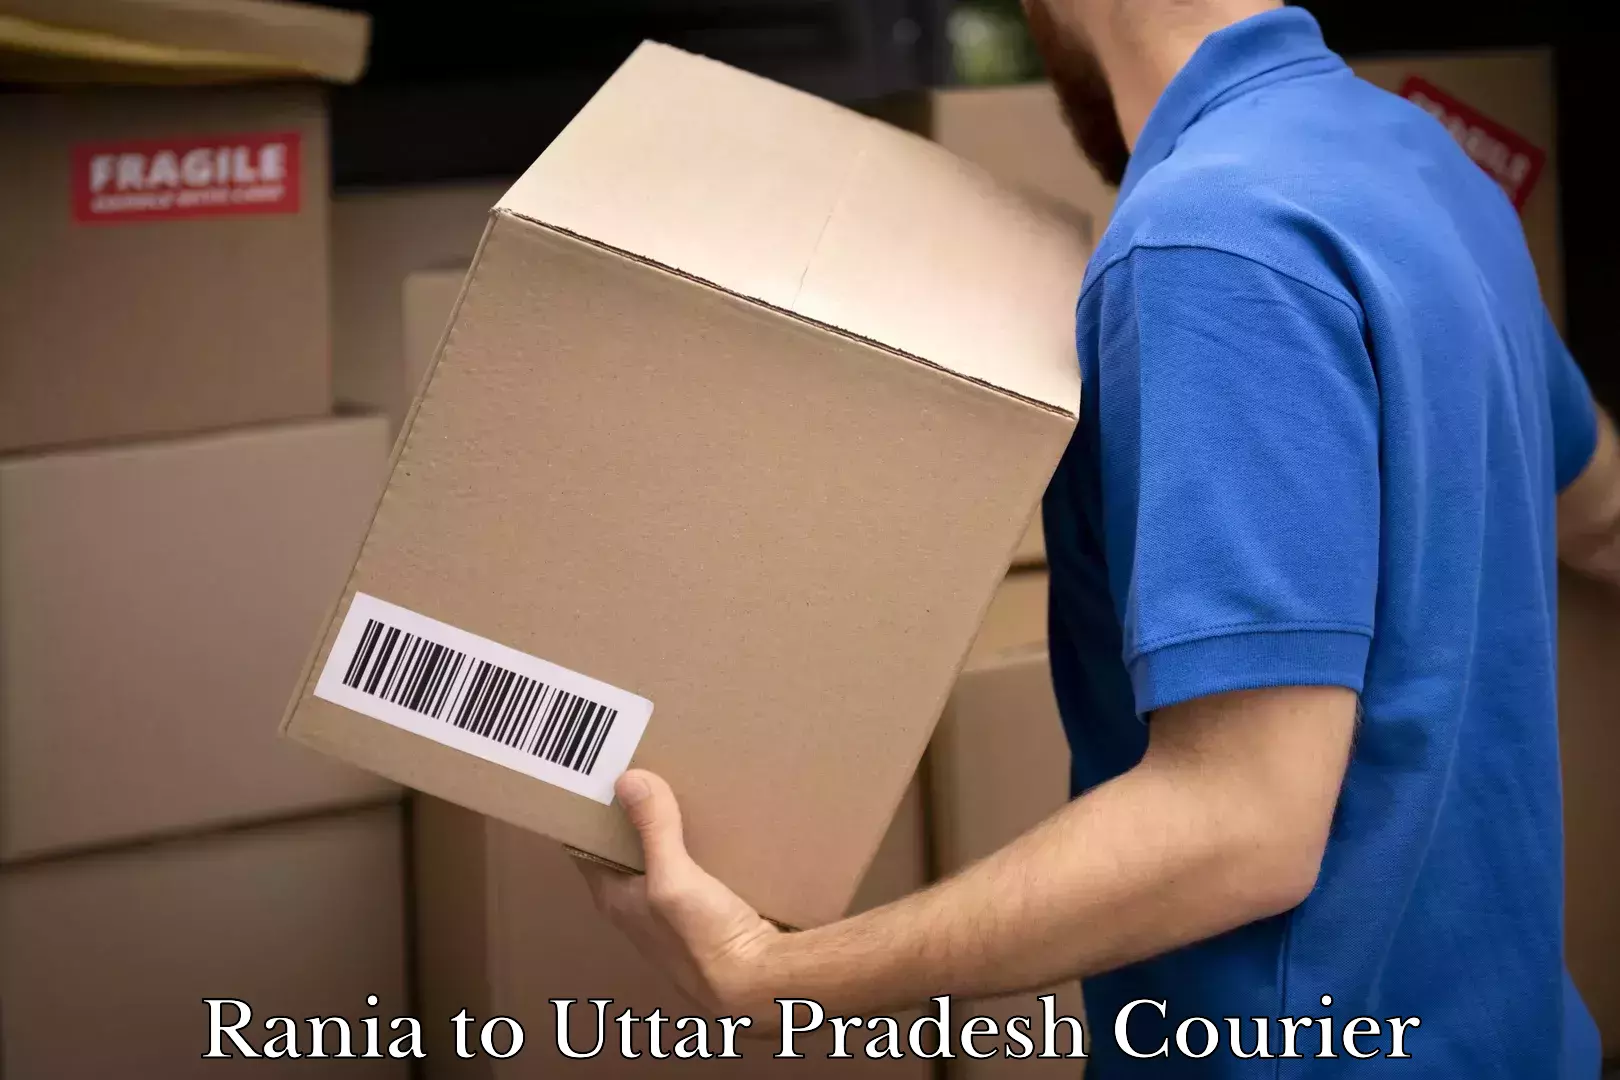 Multi-city courier Rania to Uttar Pradesh